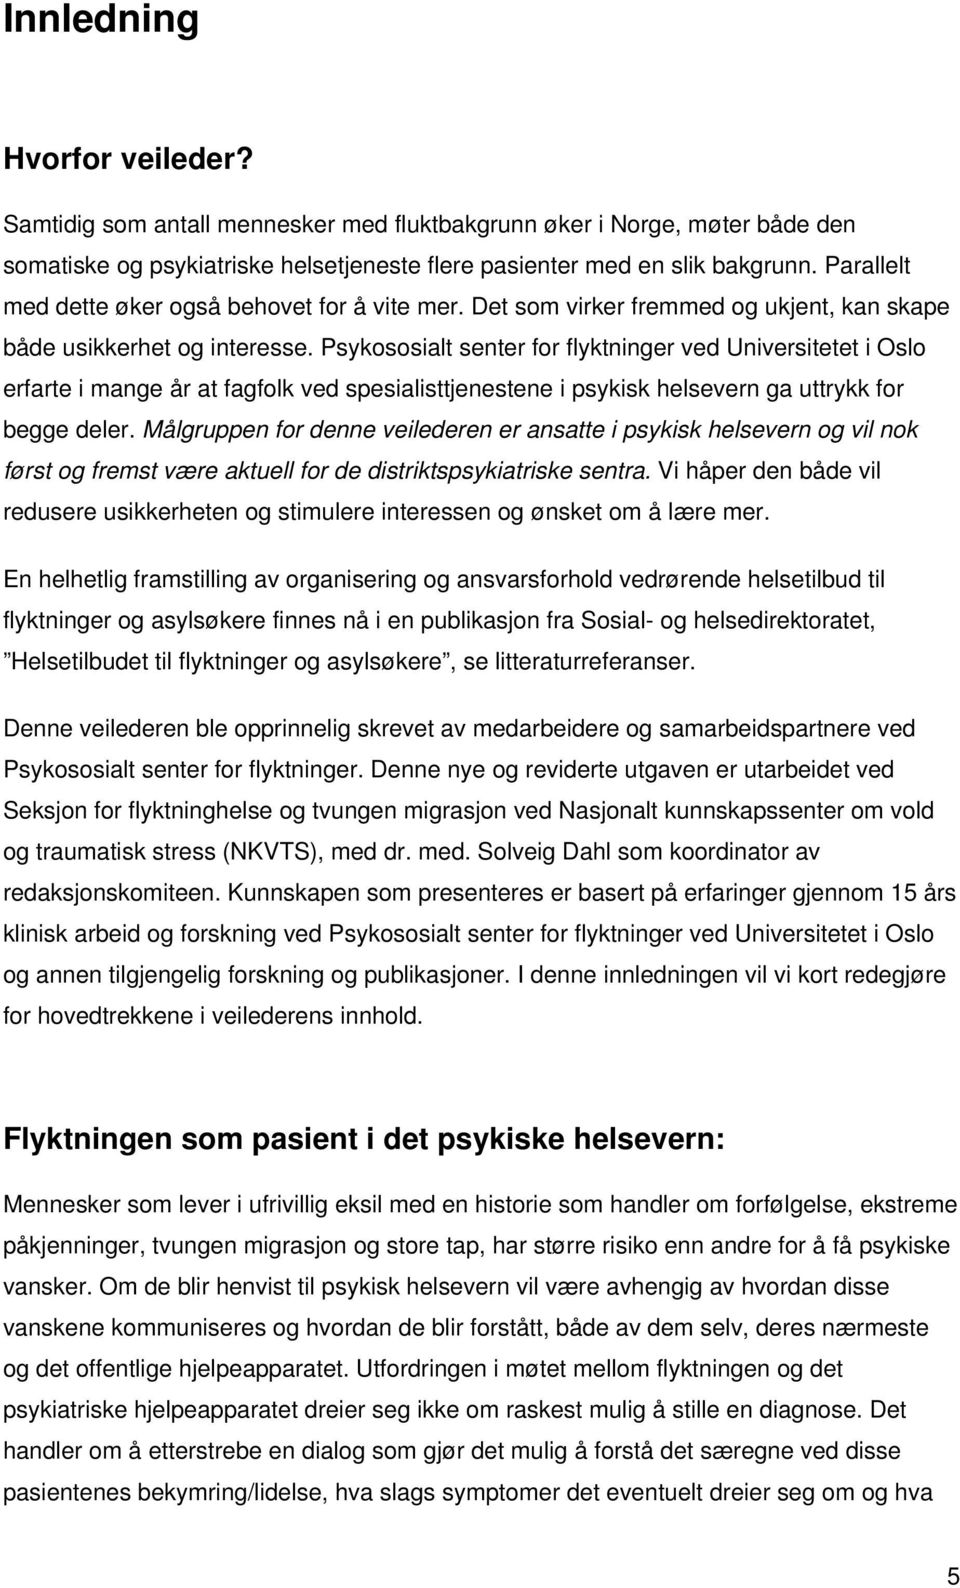 Psykososialt senter for flyktninger ved Universitetet i Oslo erfarte i mange år at fagfolk ved spesialisttjenestene i psykisk helsevern ga uttrykk for begge deler.